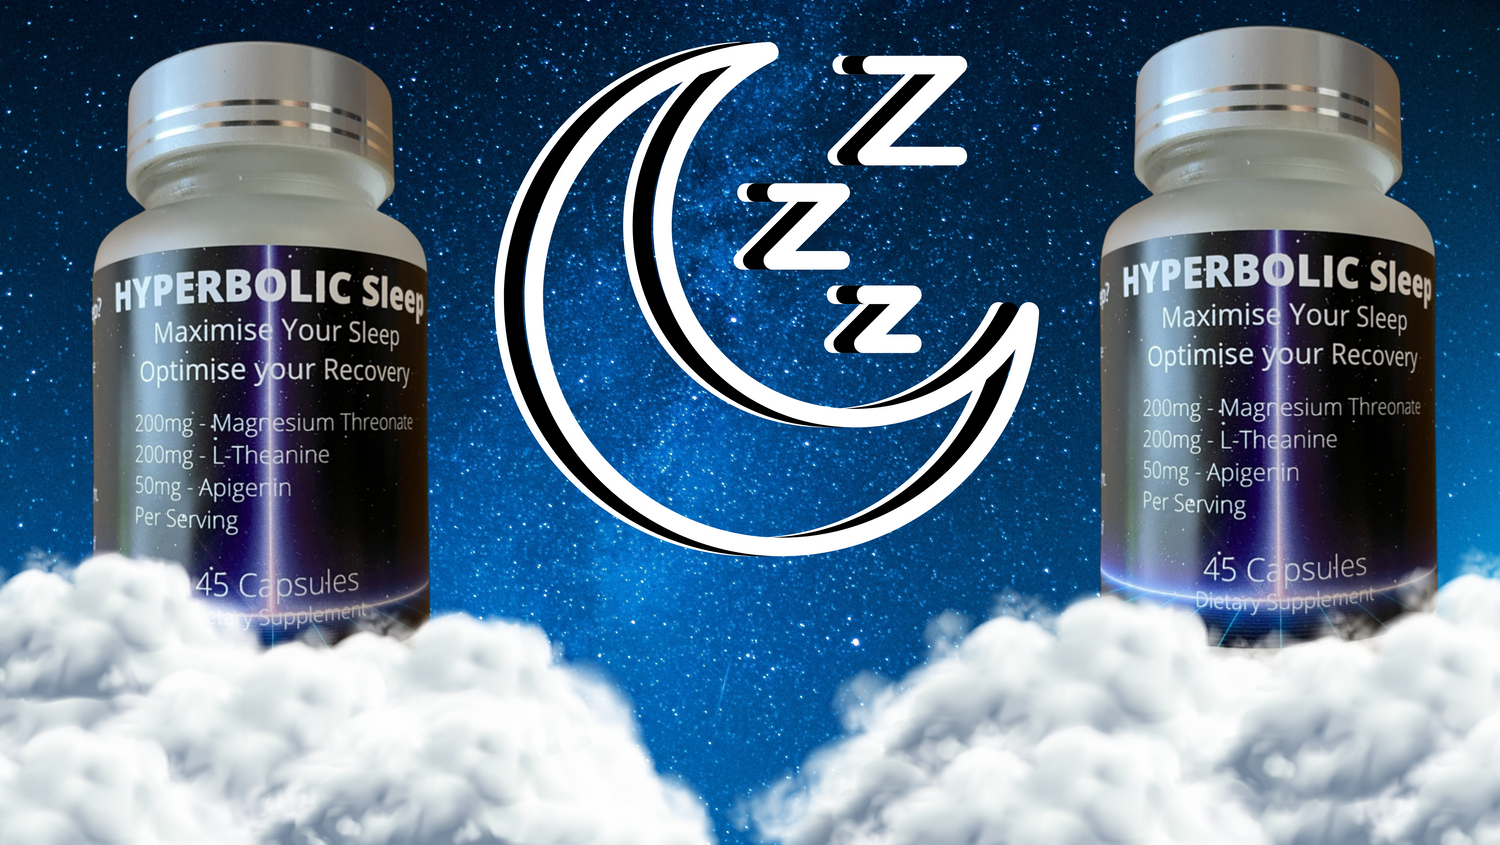 Sleep Supplement, Sleep Support, Sleep hacks, Sleep tips, Sleep better, Magnesium Threonate, Magnesium Theanine, Apigenin, Sleep Stack, Sleep, Recovery, Health, Fitness